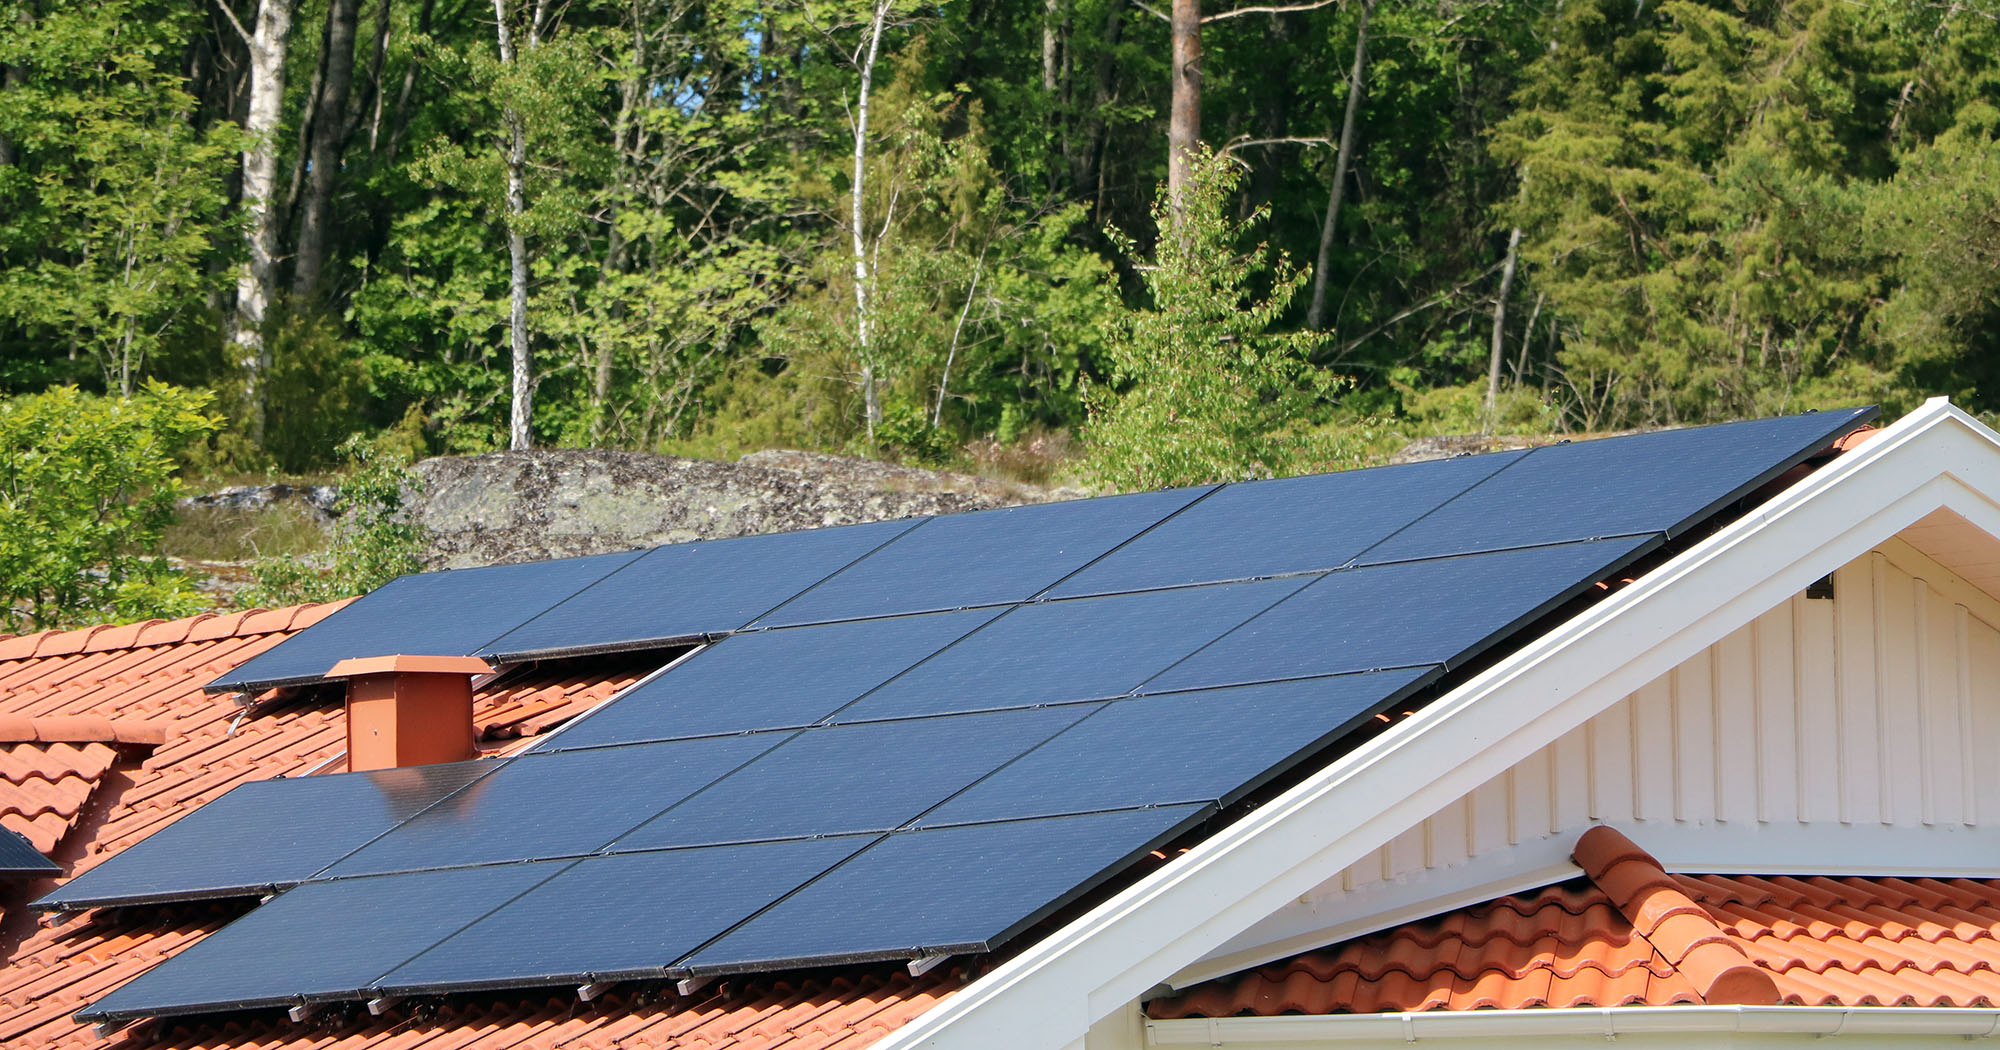 Sunsell AB - Din lokala installatör av solceller i Borås med omnejd